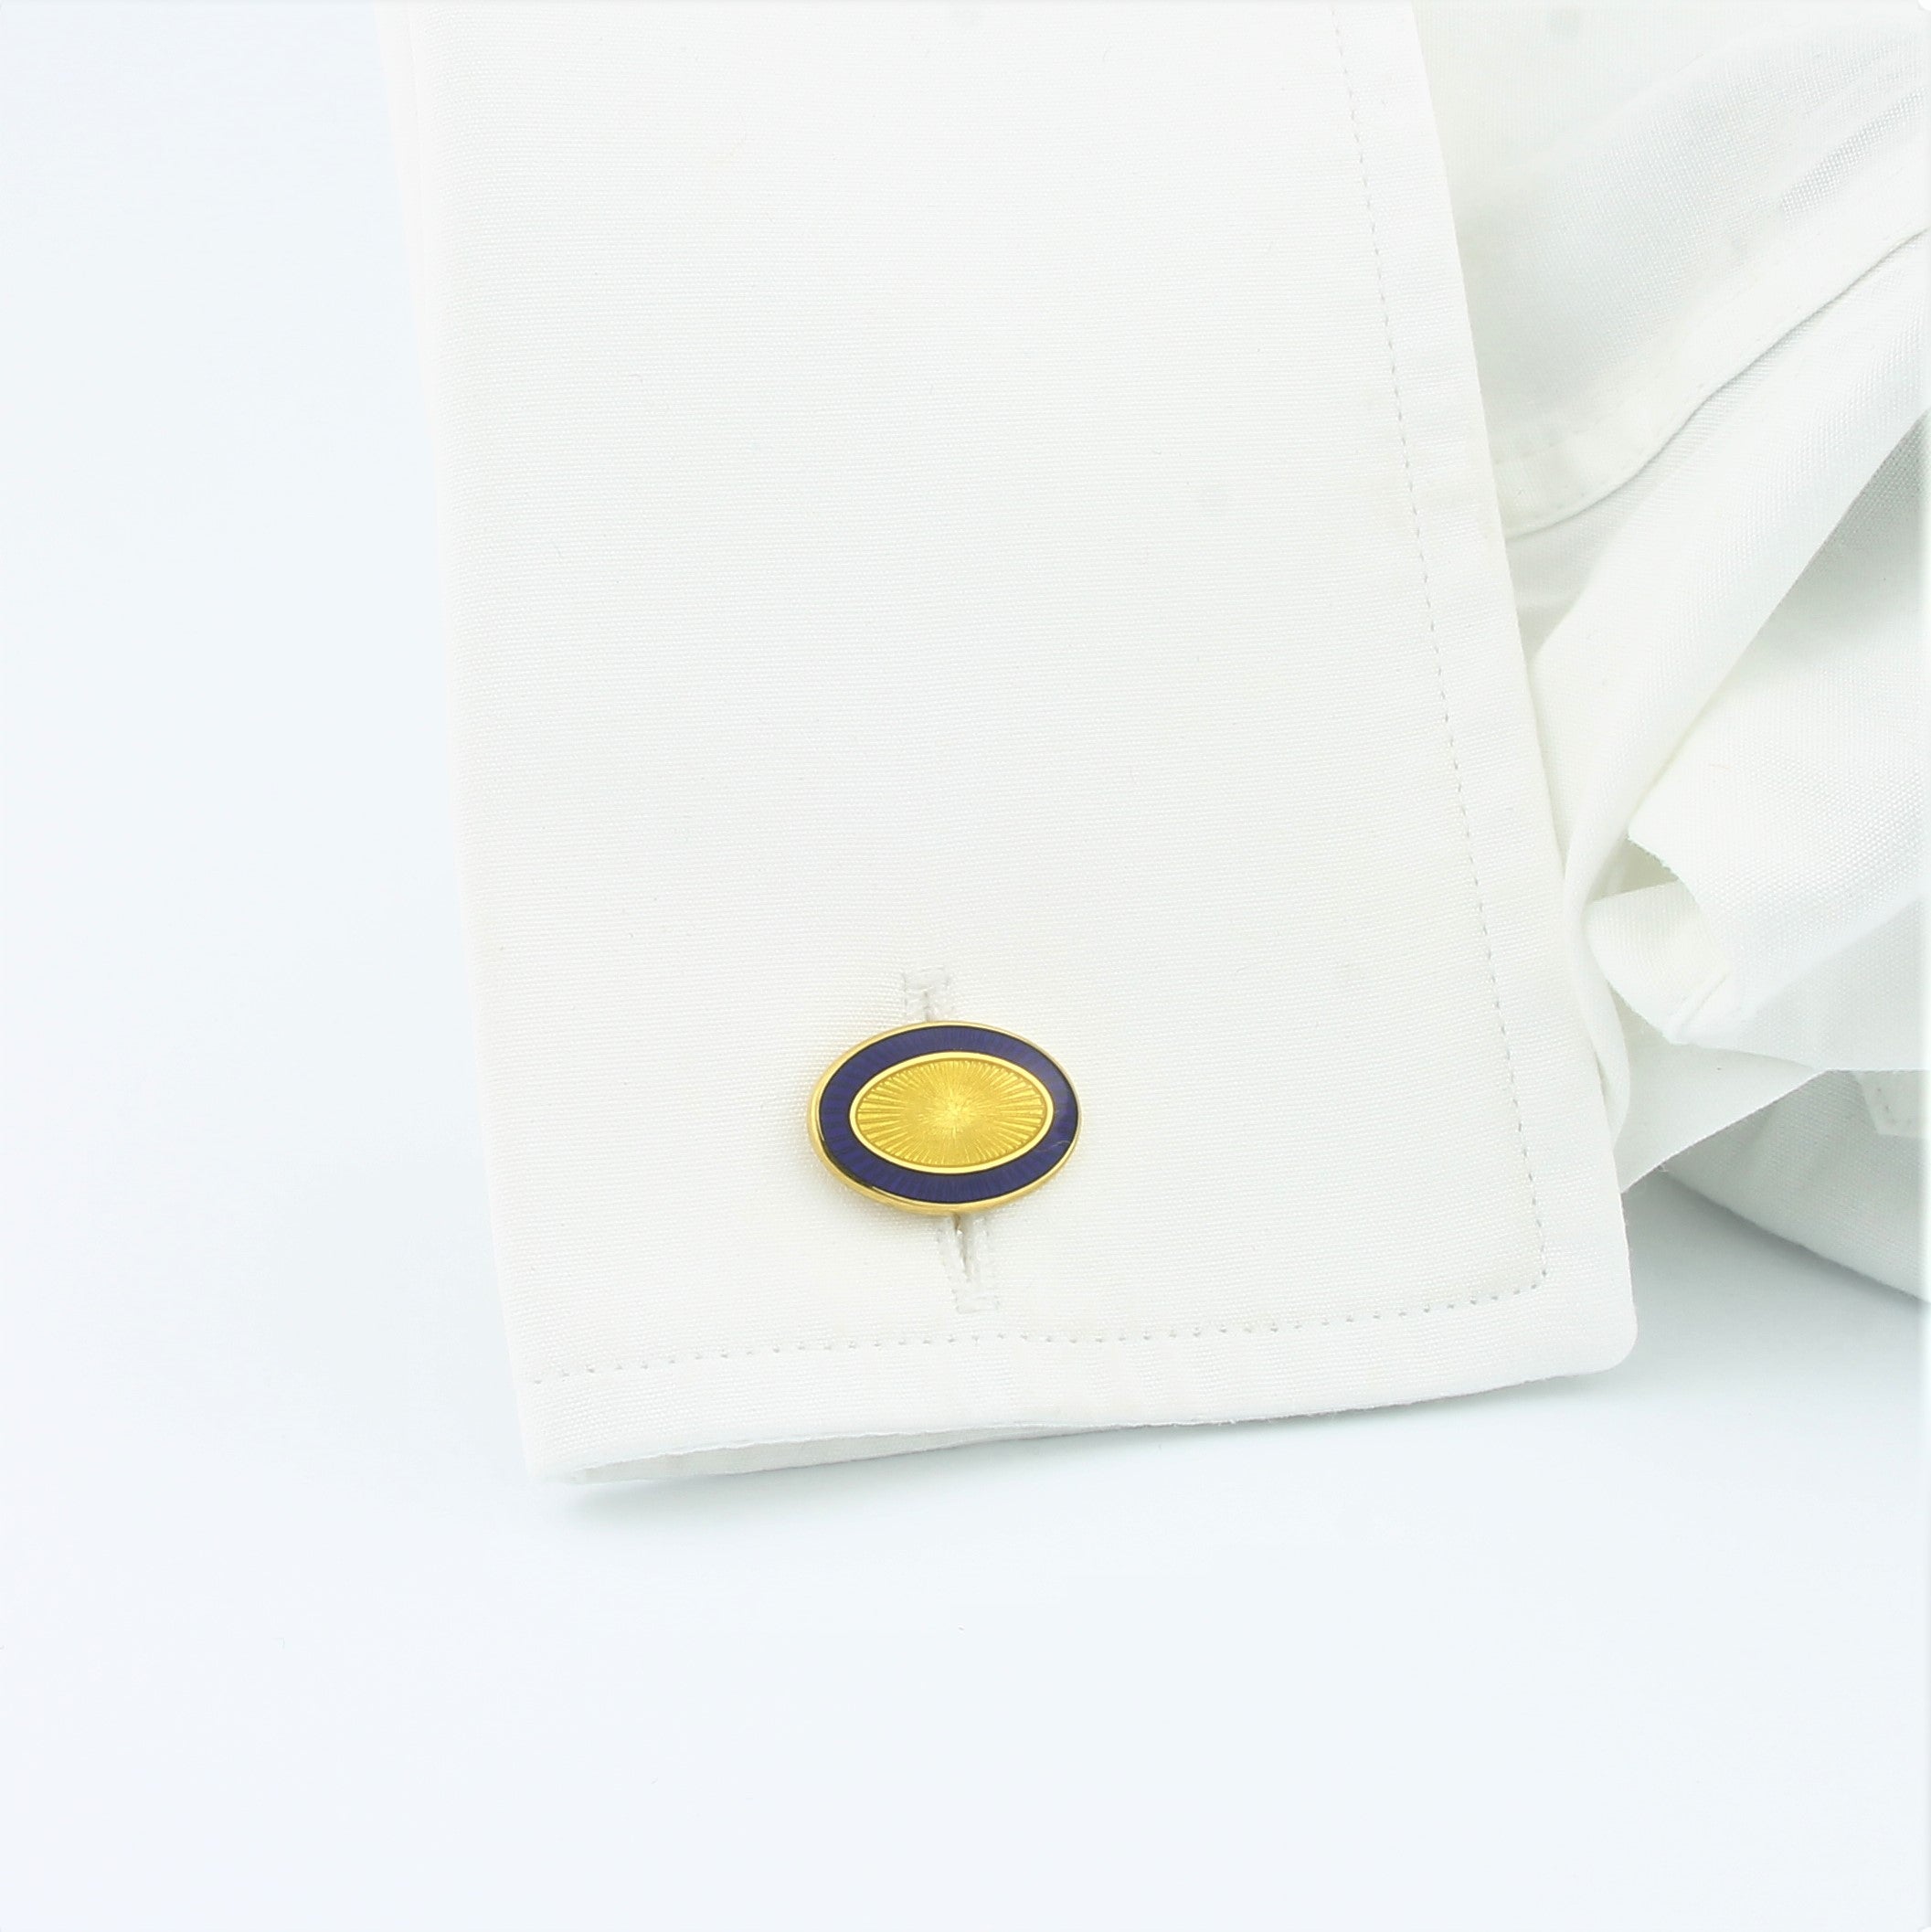 Double Oval blue yellow enamel cufflinks 18k yellow gold in a cuff